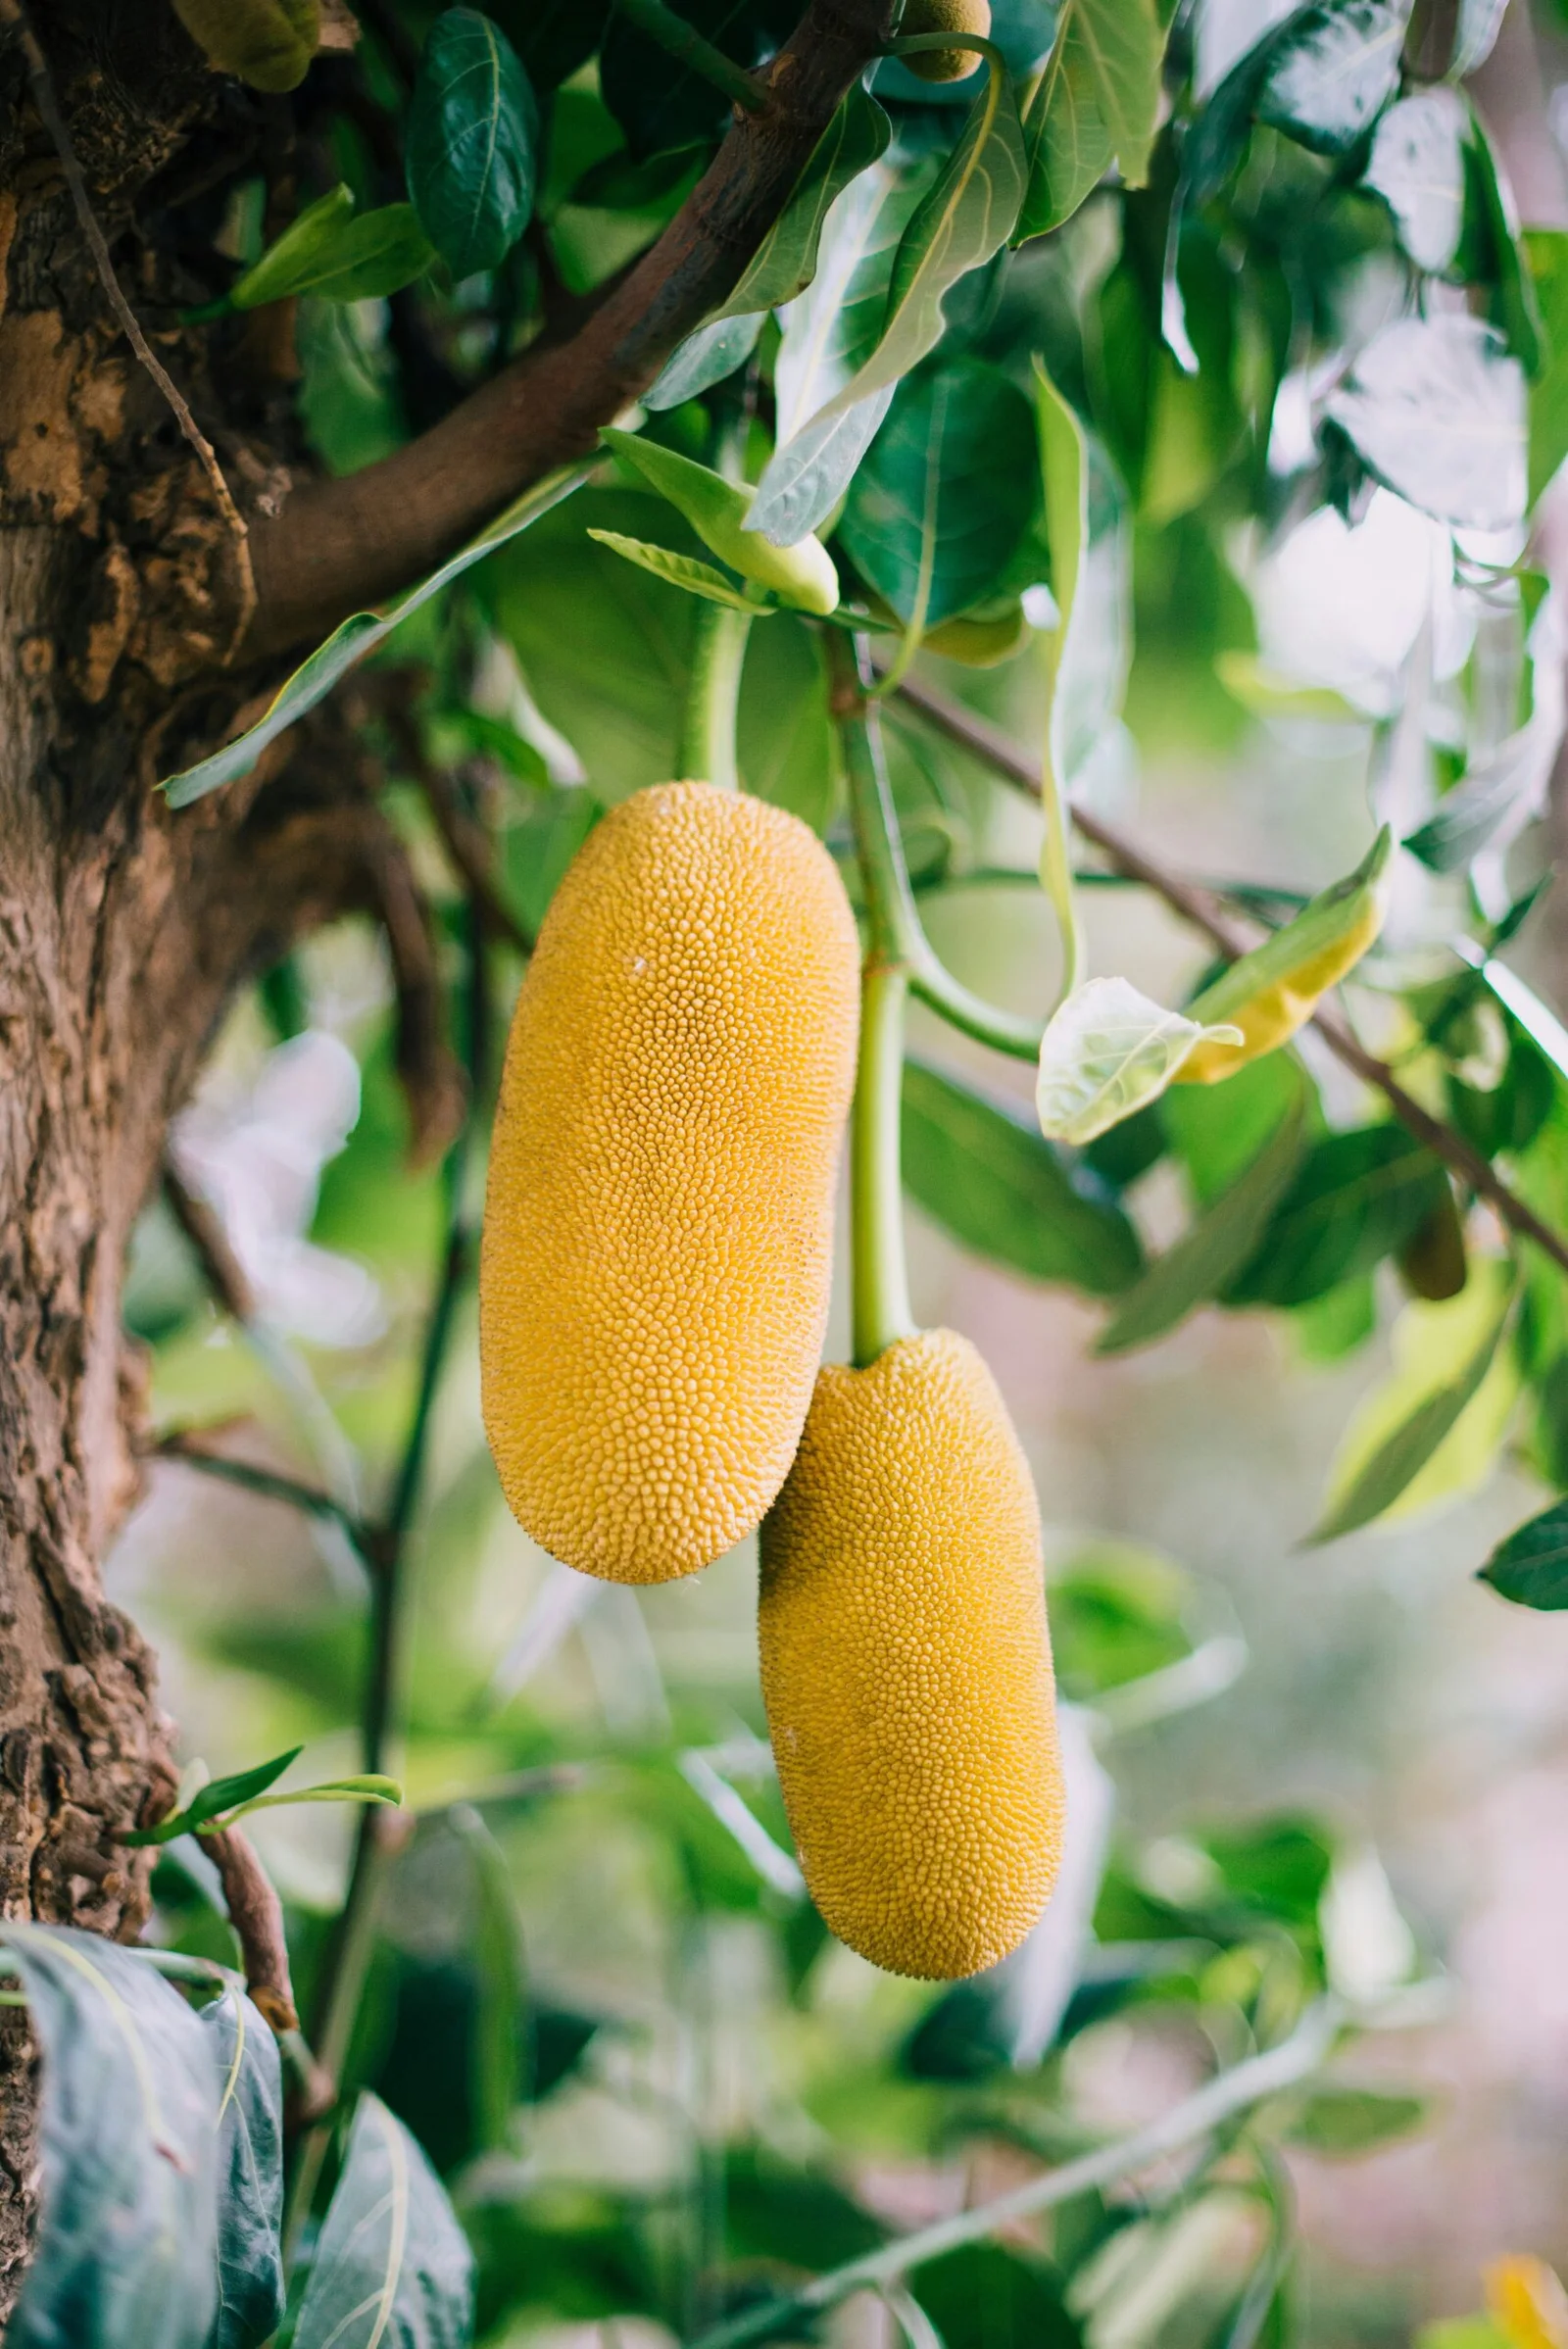 How Jackfruit is Boosting